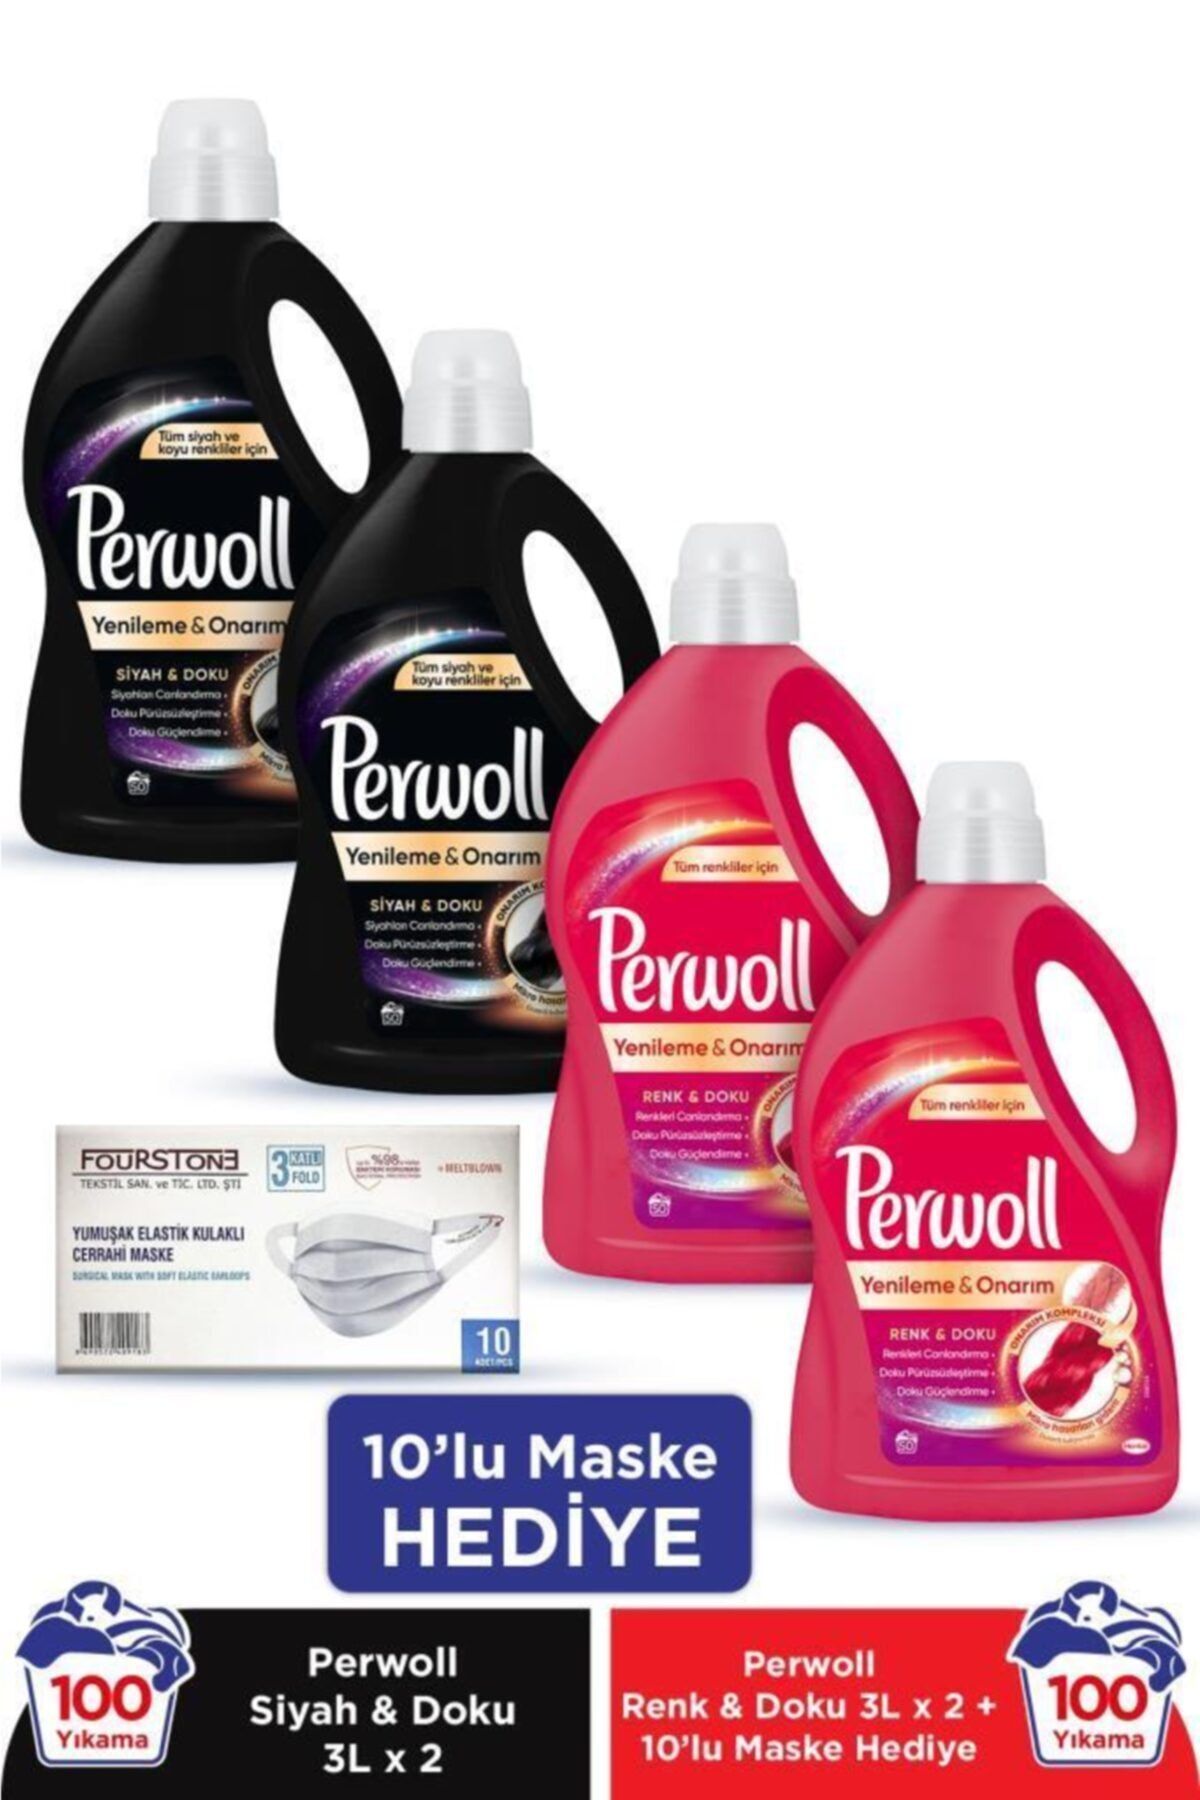 Perwoll Hassas Bakım Sıvı Çamaşır Deterjanı 4 x 3L (200 Yıkama) 2 Siyah + 2 Renkli + 10'lu Maske Hediye